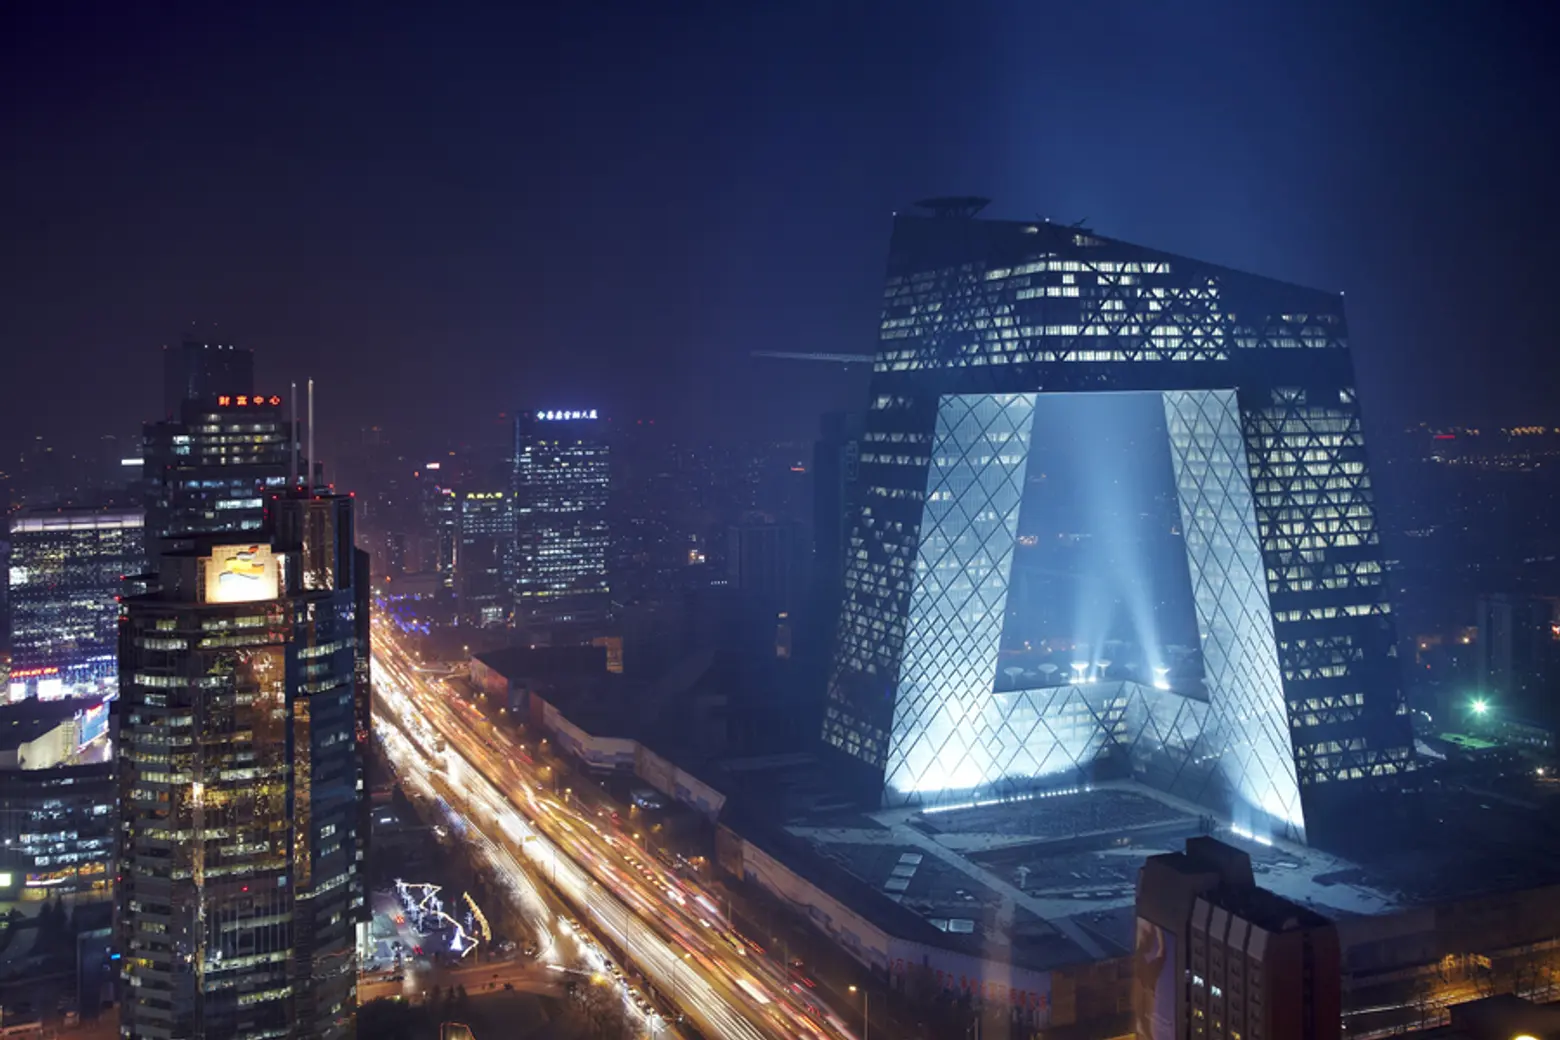 CCTV Tower in Beijing